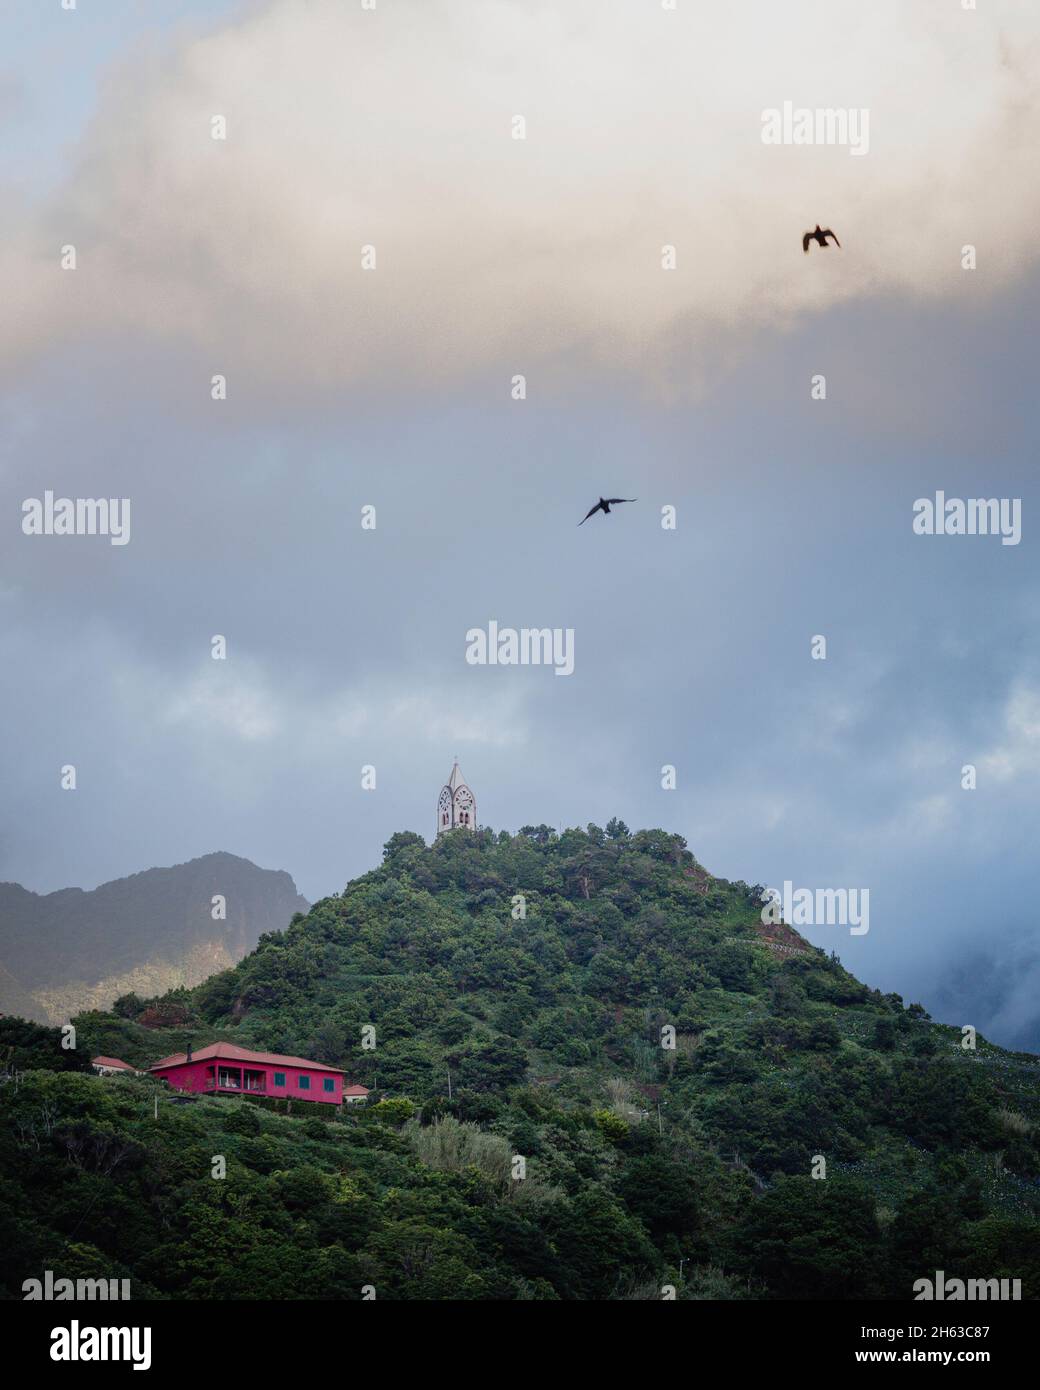 Abendhimmel auf madeira. Kapelle auf einem bewaldeten Hügel und 2 Vögel am Himmel. Stockfoto